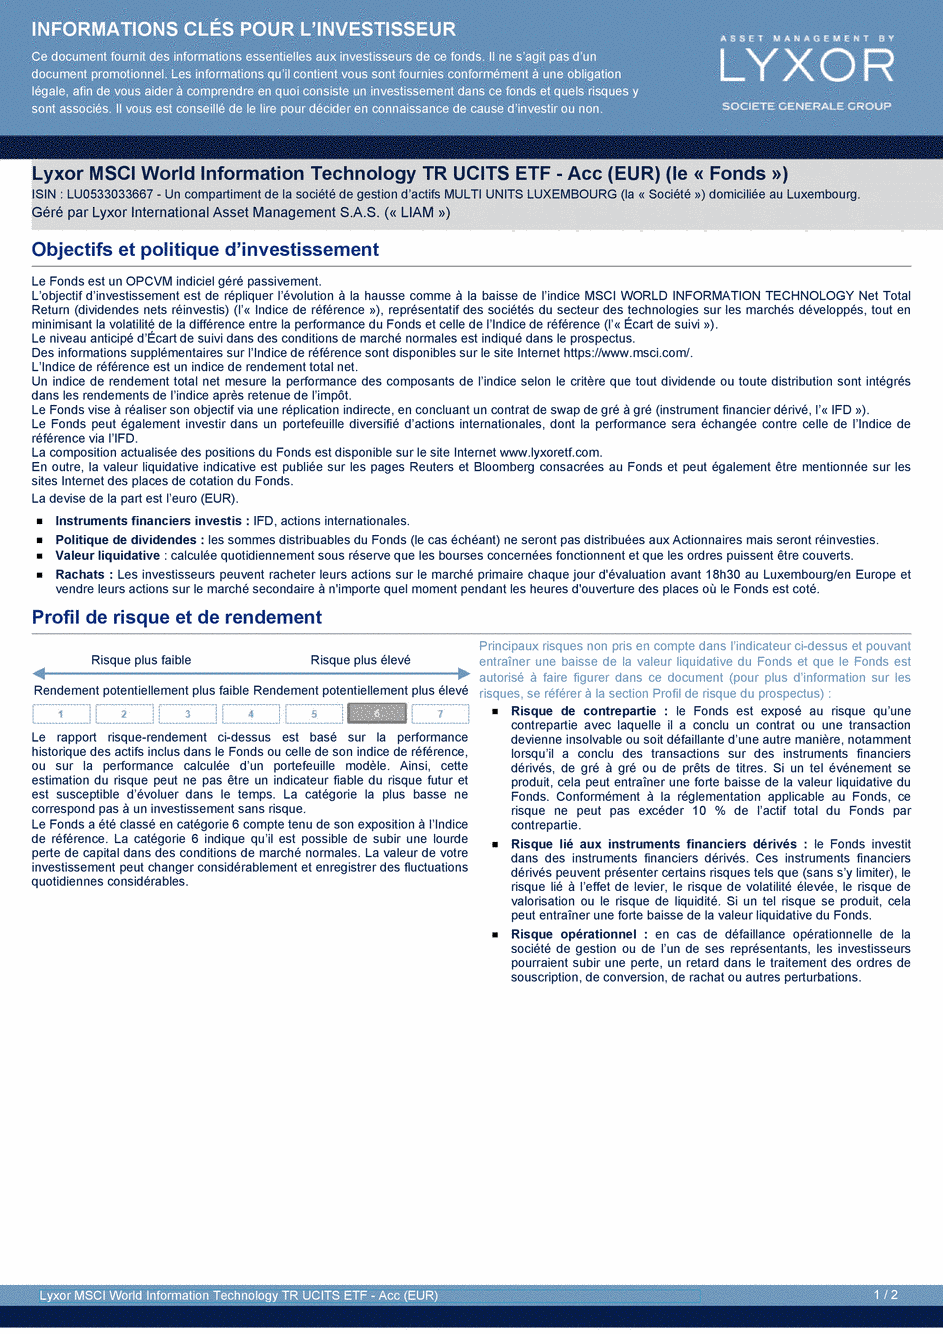 DICI Lyxor MSCI World Information Technology TR UCITS ETF - Acc (EUR) - 10/07/2020 - Français